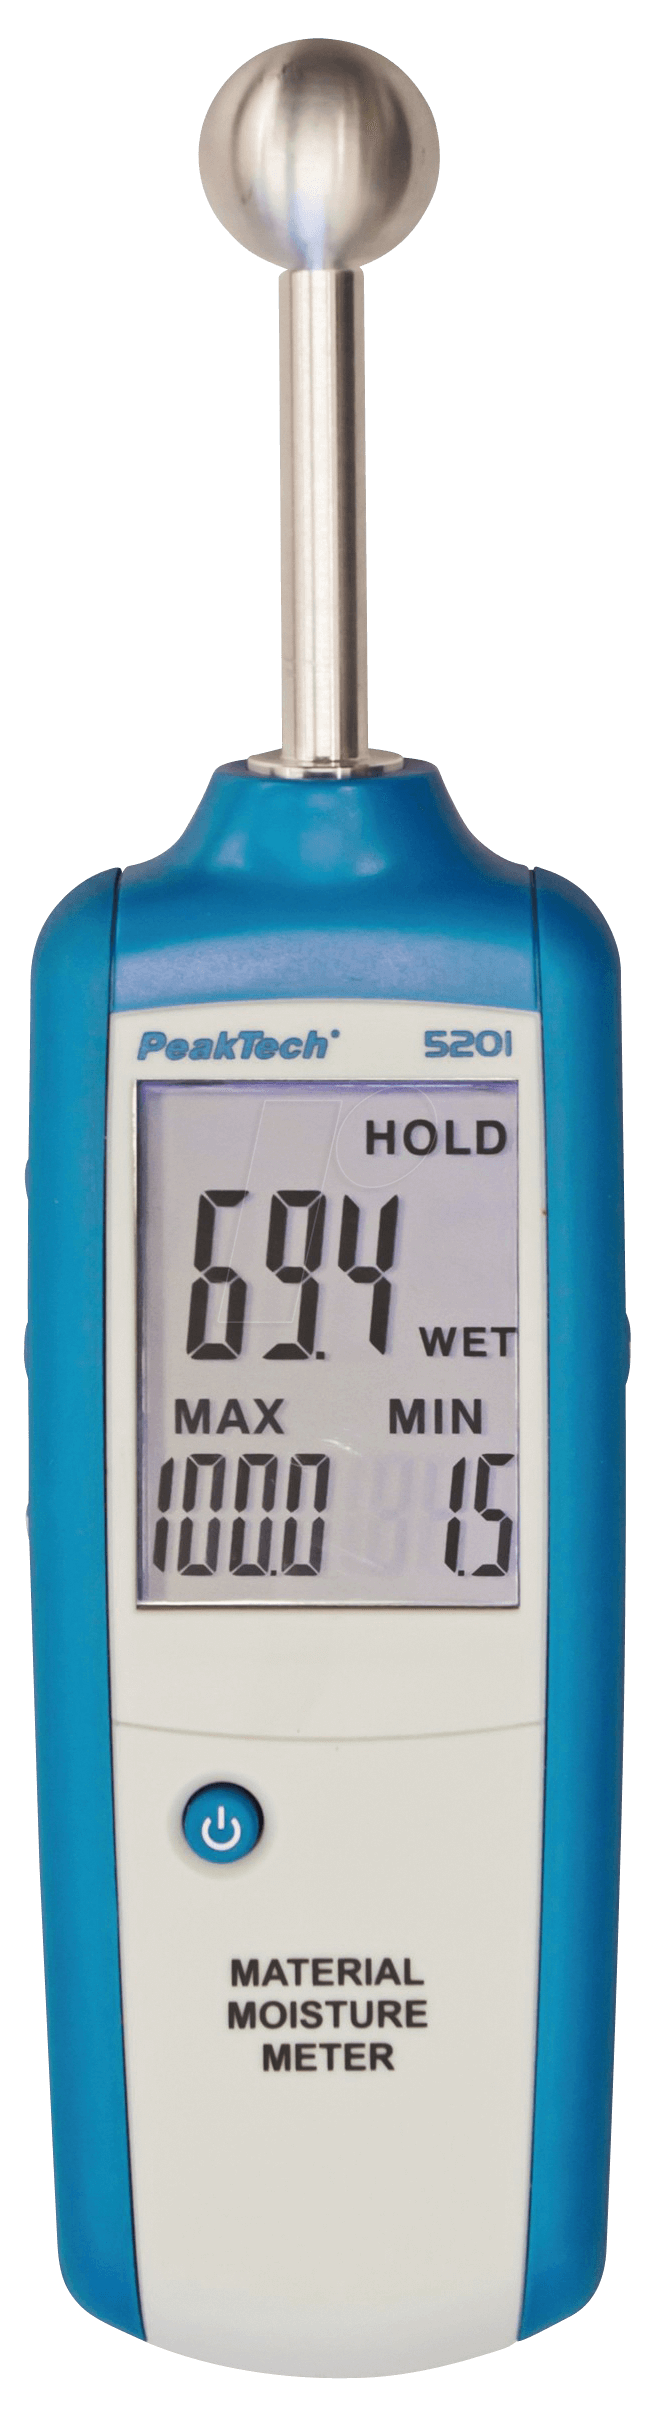 PeakTech P 5201 Wassergehaltsmesser Widerstand (Pin) Karton (P 5201)